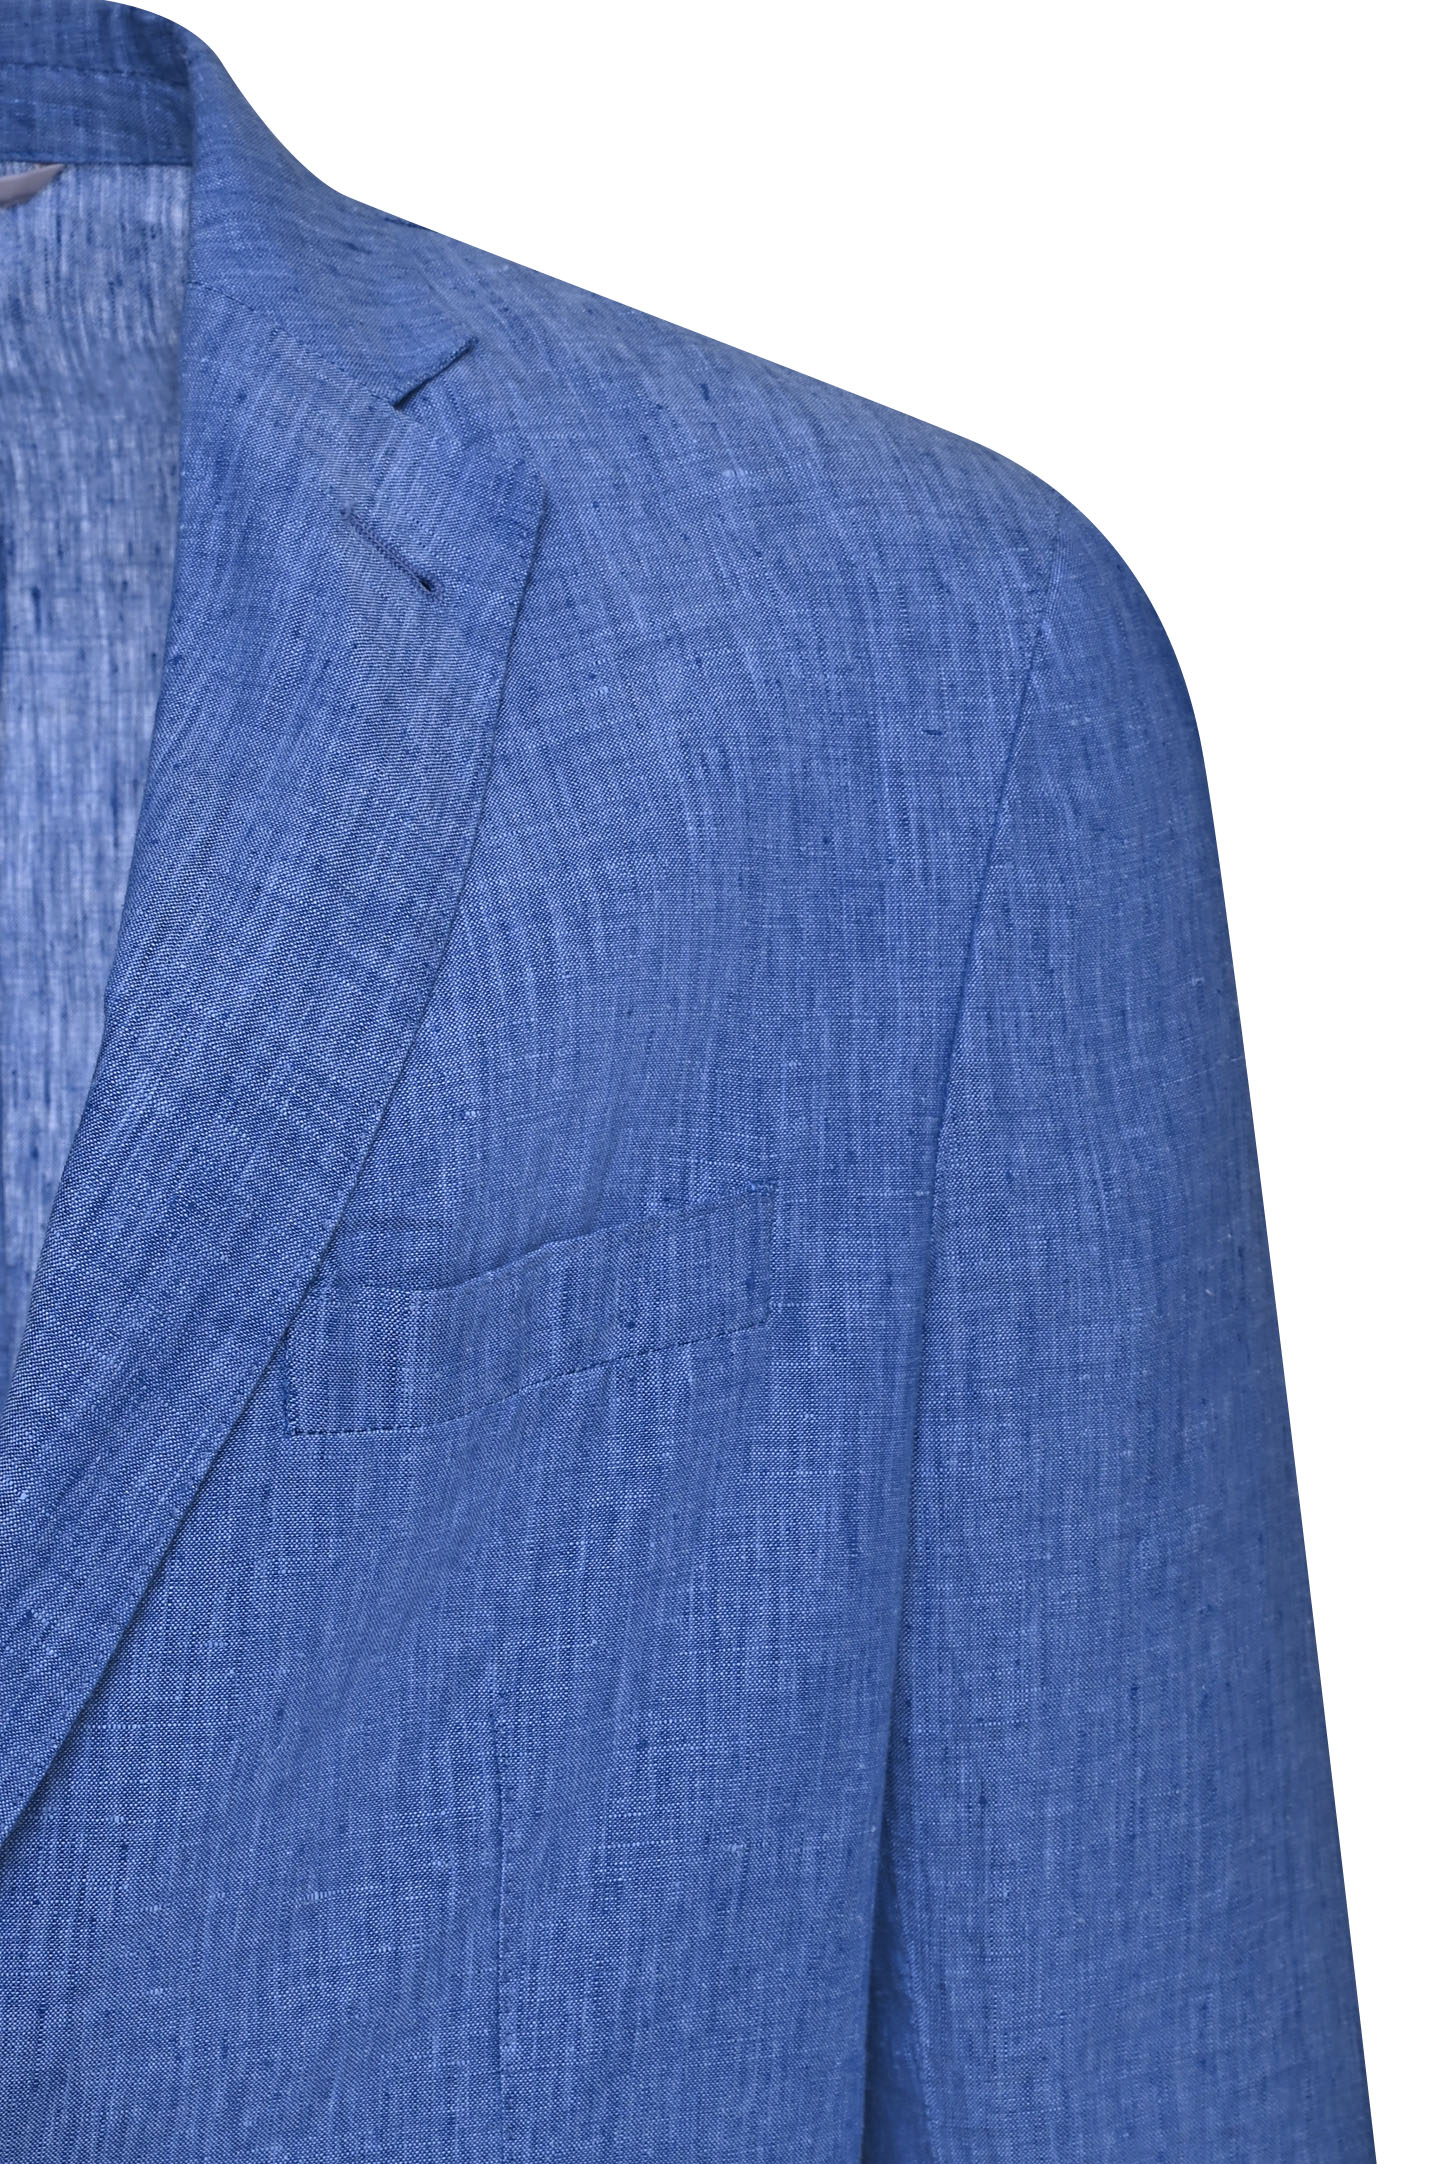 Пиджак DORIANI CASHMERE C138/269LAV-7-S, цвет: Голубой, Мужской